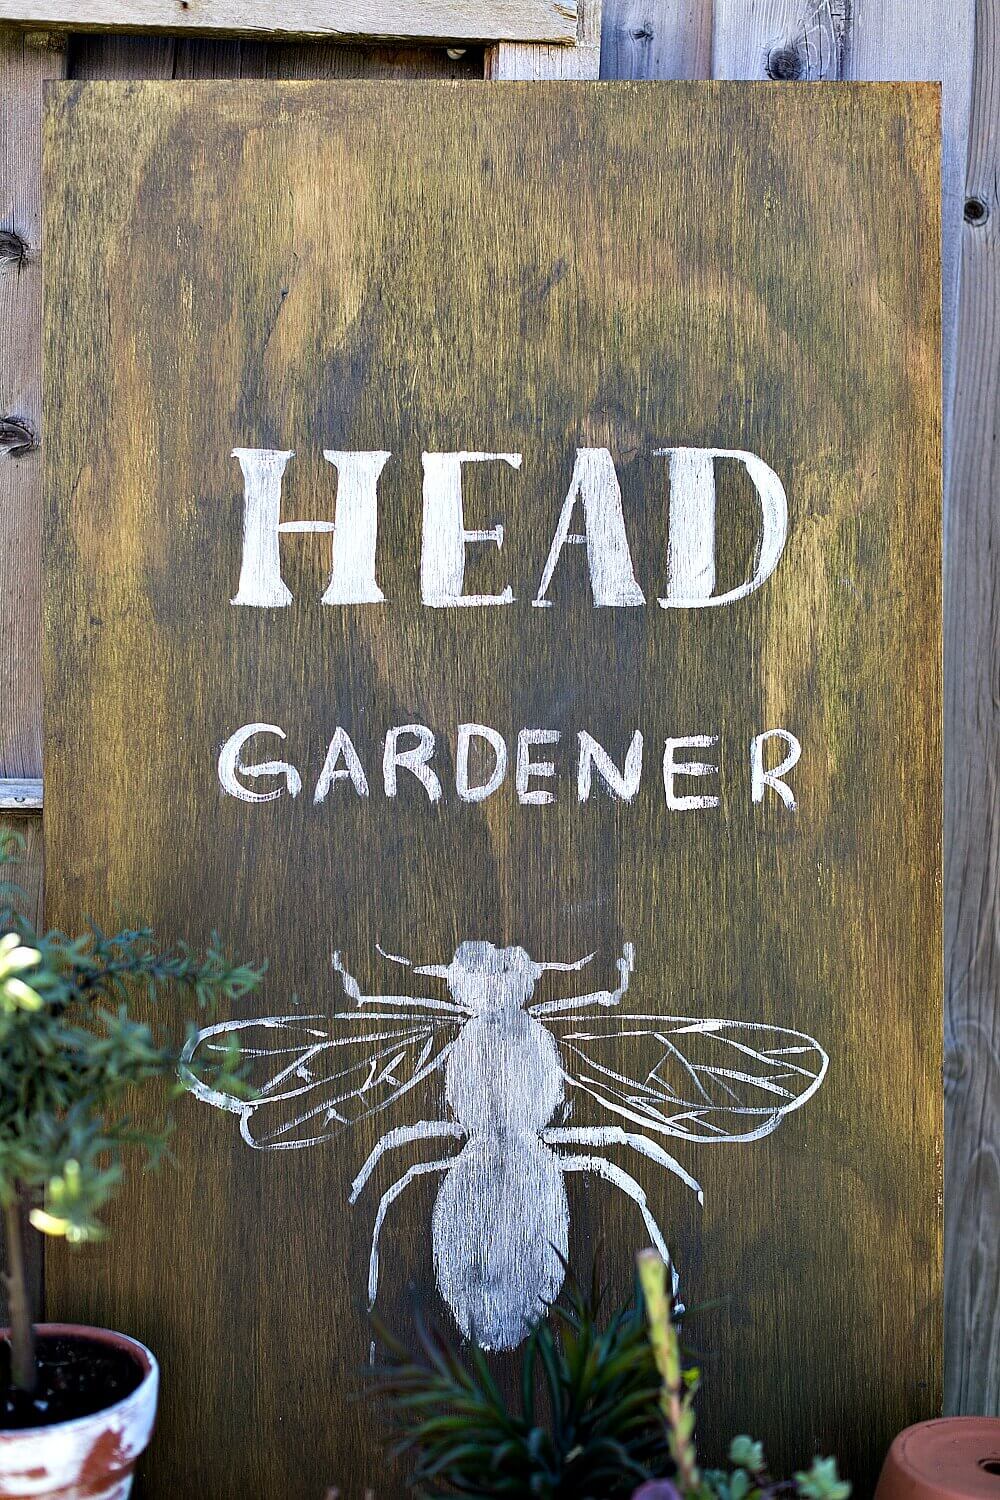 Fun Sign Celebrating the Bees | Funny DIY Garden Sign Ideas